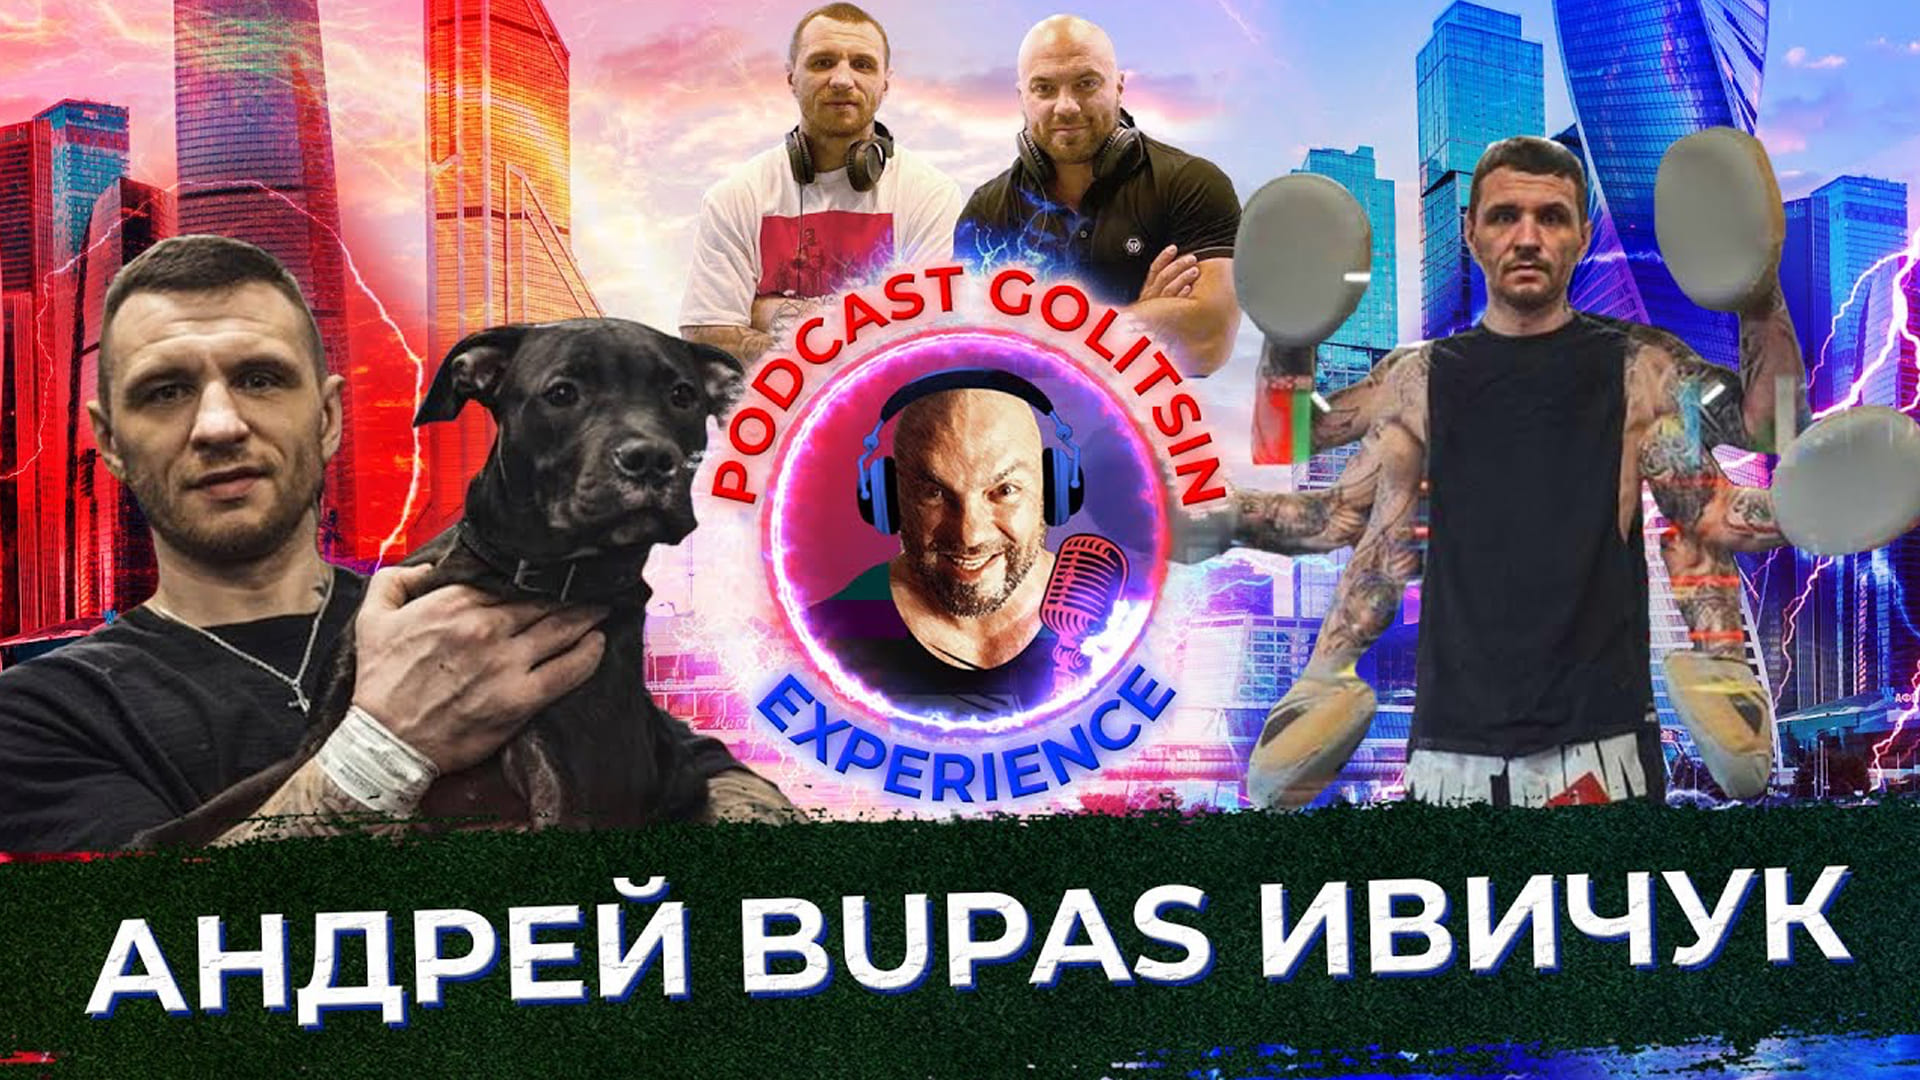 Андрей Bupas Ивичук — тренер чемпионов!